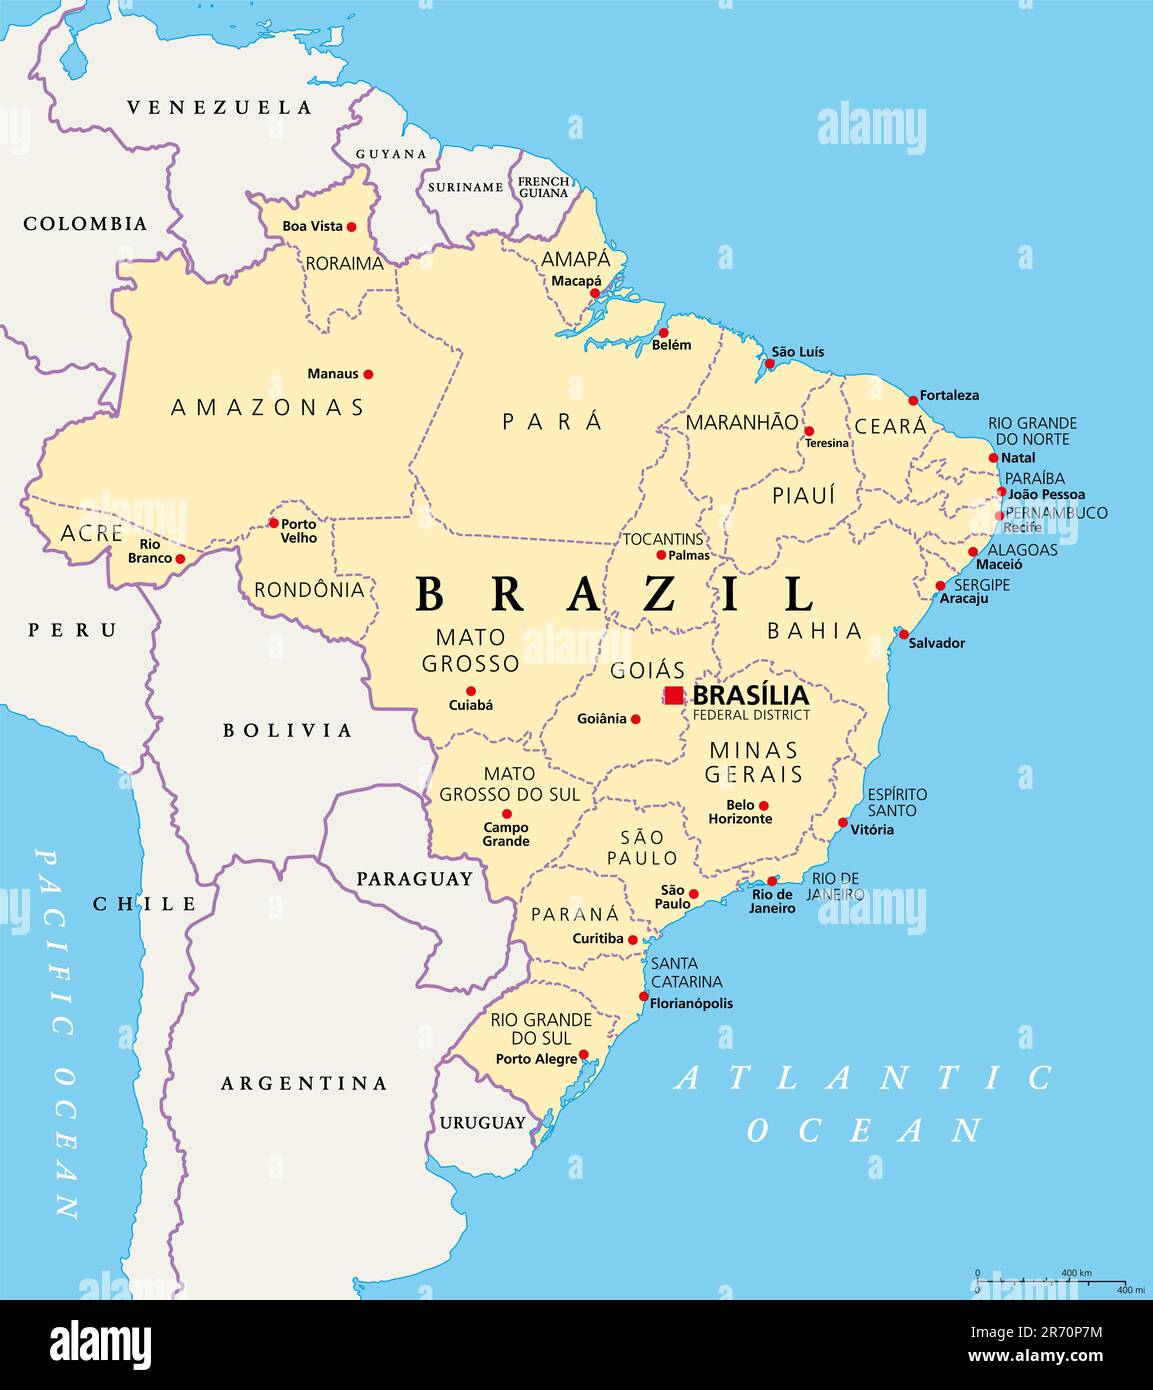 Etats du Brésil, carte politique. Unités fédératives avec frontières et capitales. Entités infranationales avec un certain degré d'autonomie. Banque D'Images